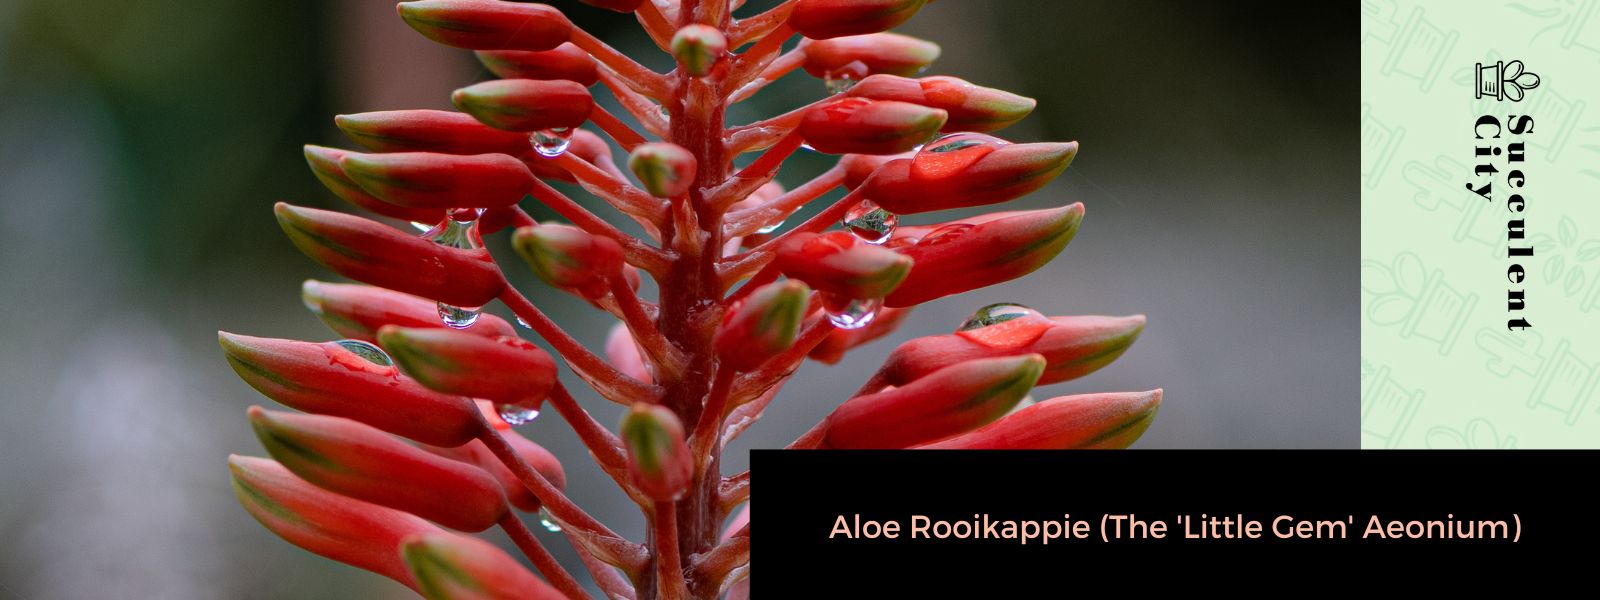 Aloe Rooikappie (La “pequeña joya” Aeonium)